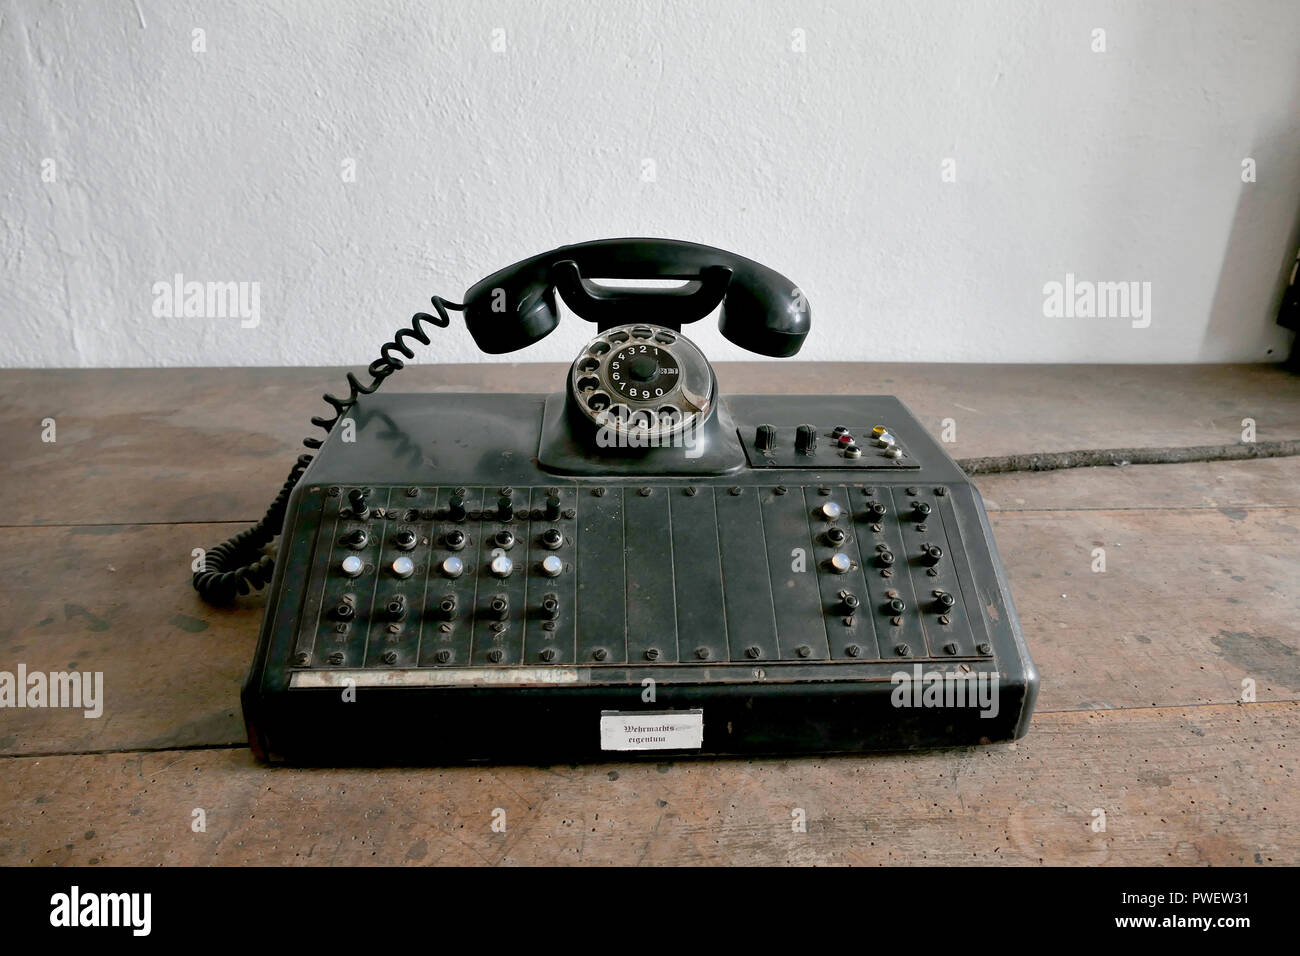 Eine Telefonzentrale mit Hinweis "Wehrmachtsausstellung" Eigentum im Eingang Wachstube. Schloss Colditz oder Schloss Colditz in Colditz, Deutschland. Stockfoto